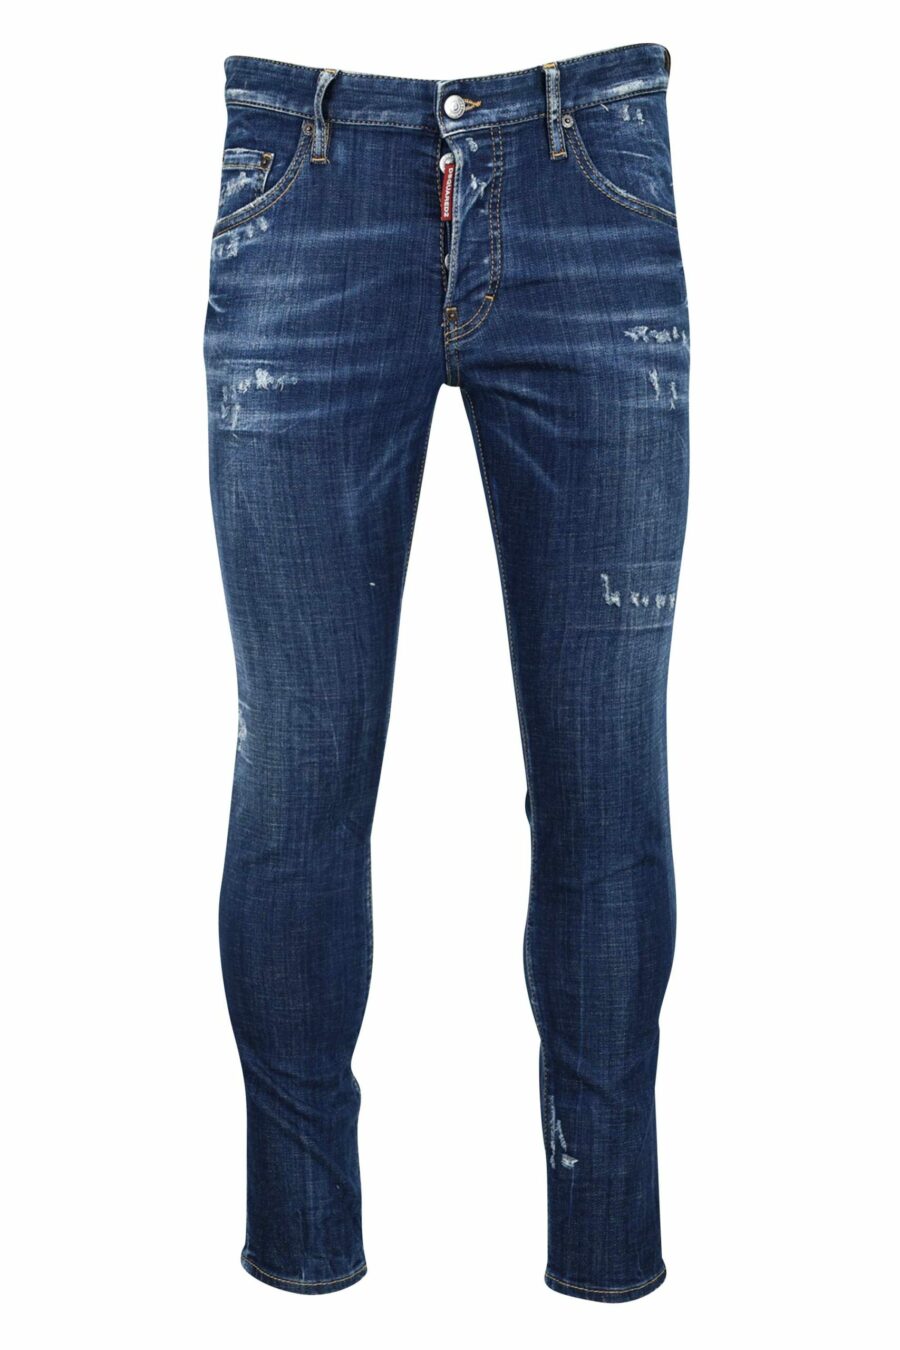 Semi-getragene blaue "Skater Jeans" - 8054148101503 skaliert